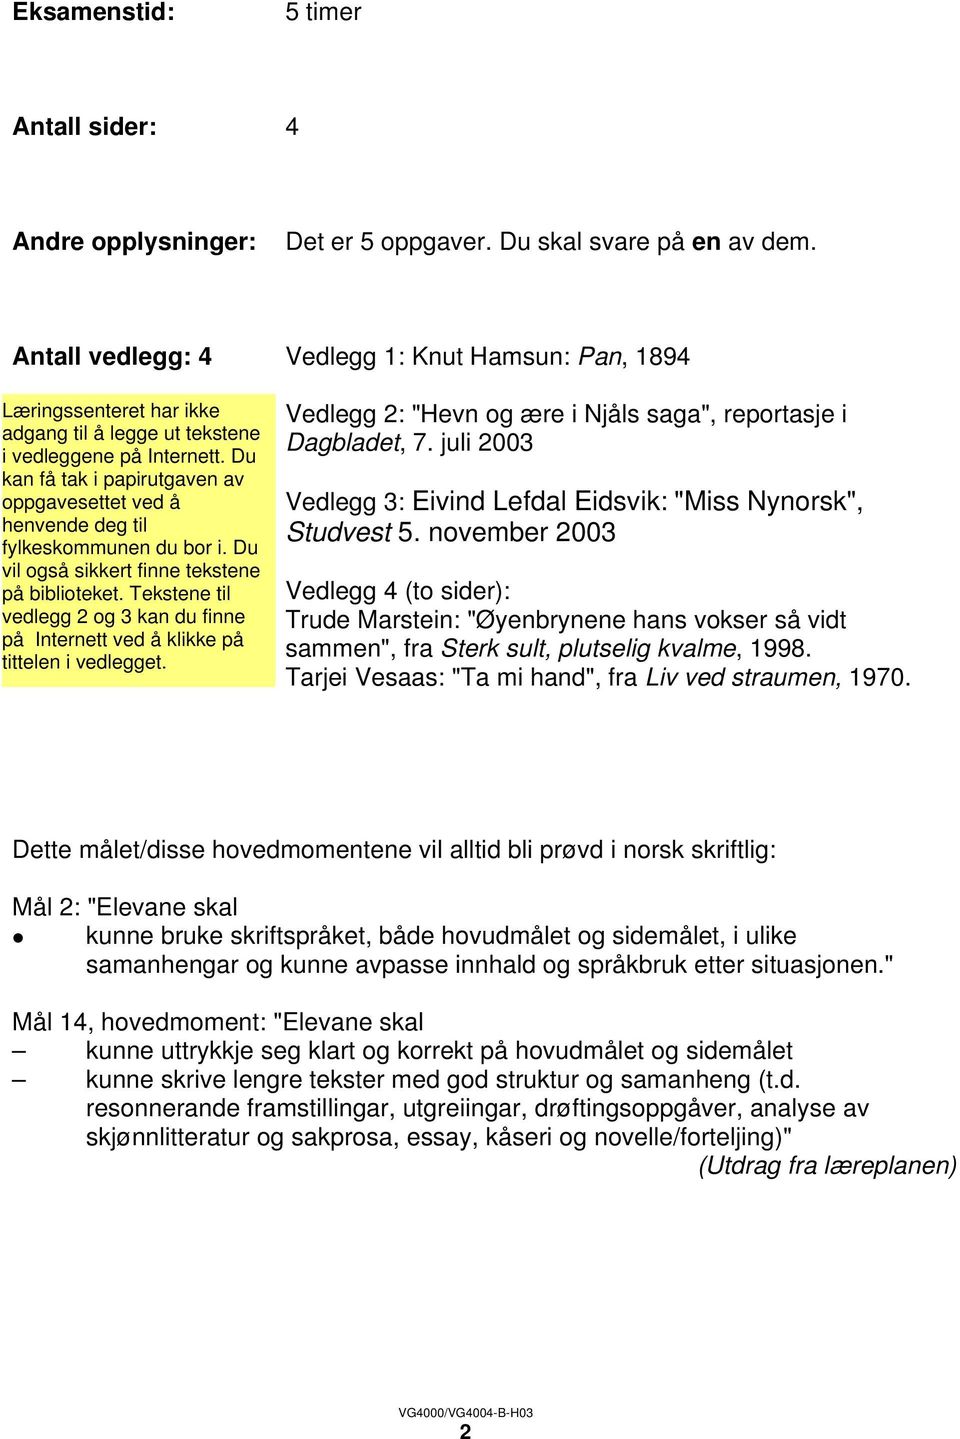 november 2003 Vedlegg 4 (to sider): Trude Marstein: "Øyenbrynene hans vokser så vidt sammen", fra Sterk sult, plutselig kvalme, 1998. Tarjei Vesaas: "Ta mi hand", fra Liv ved straumen, 1970.